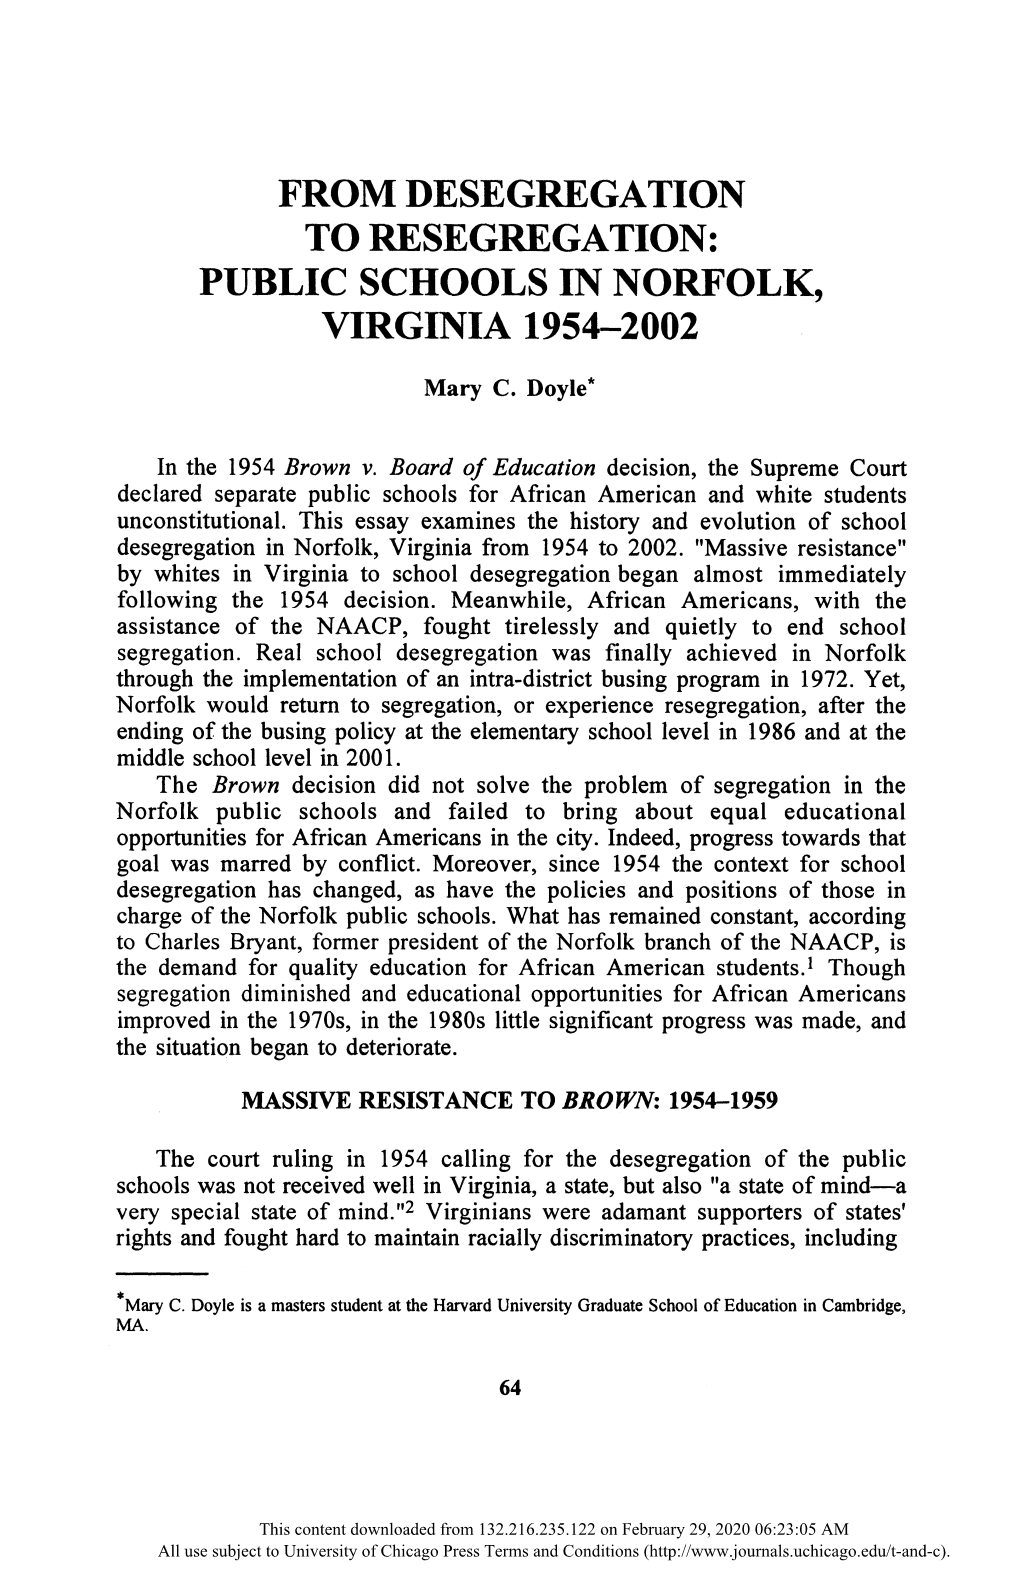 To Resegregation: Public Schools in Norfolk, Virginia 1954-2002